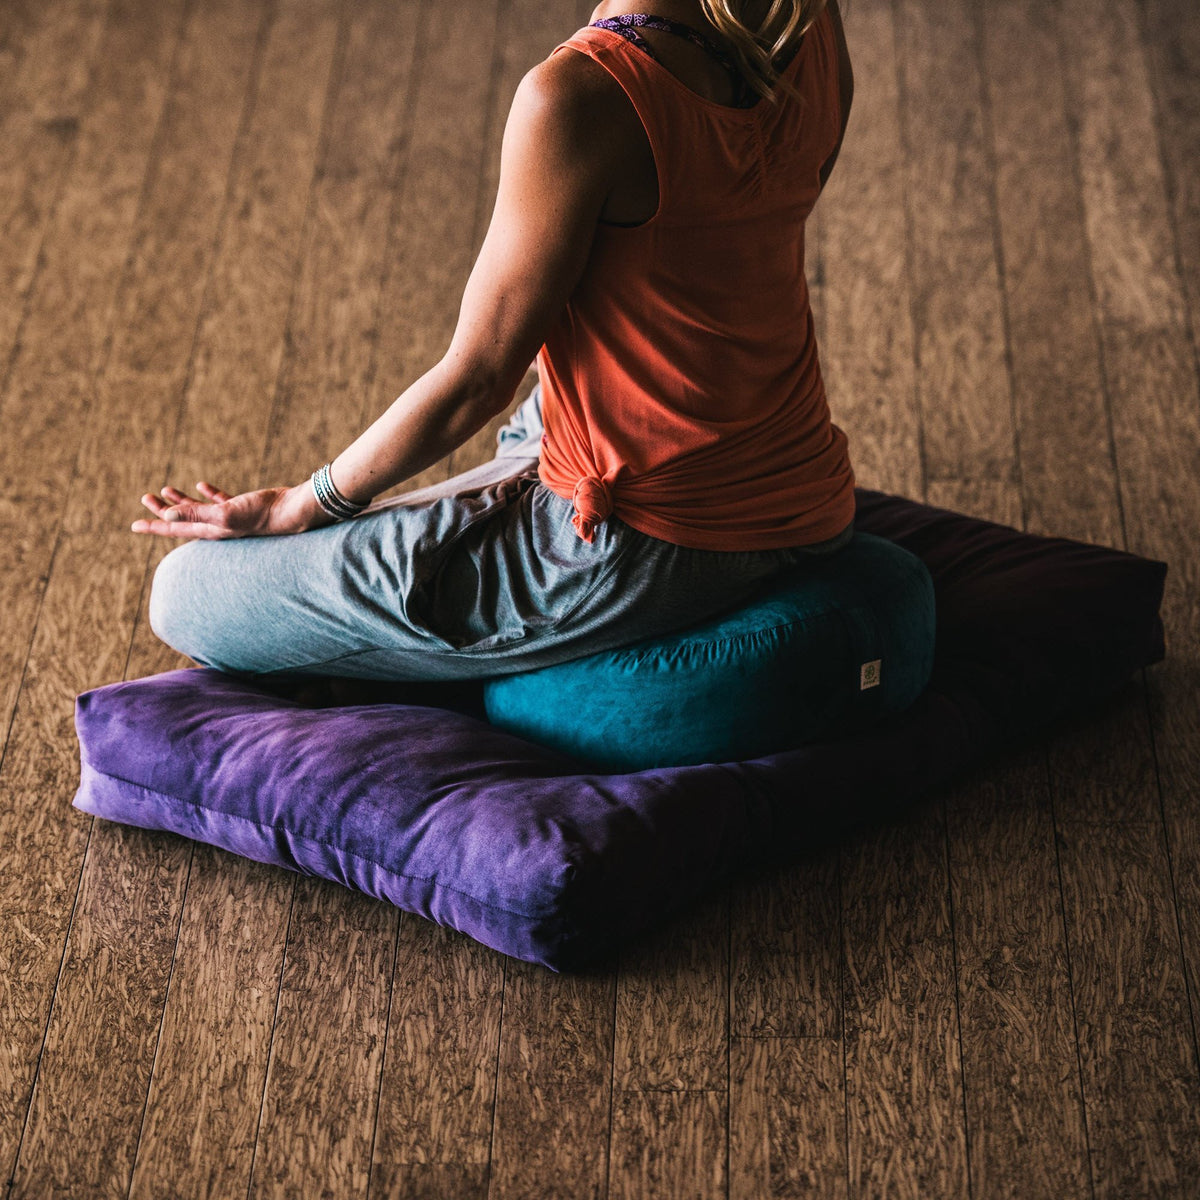  Meditation Mat,Yoga Meditation Cushion,Zabuton Floor